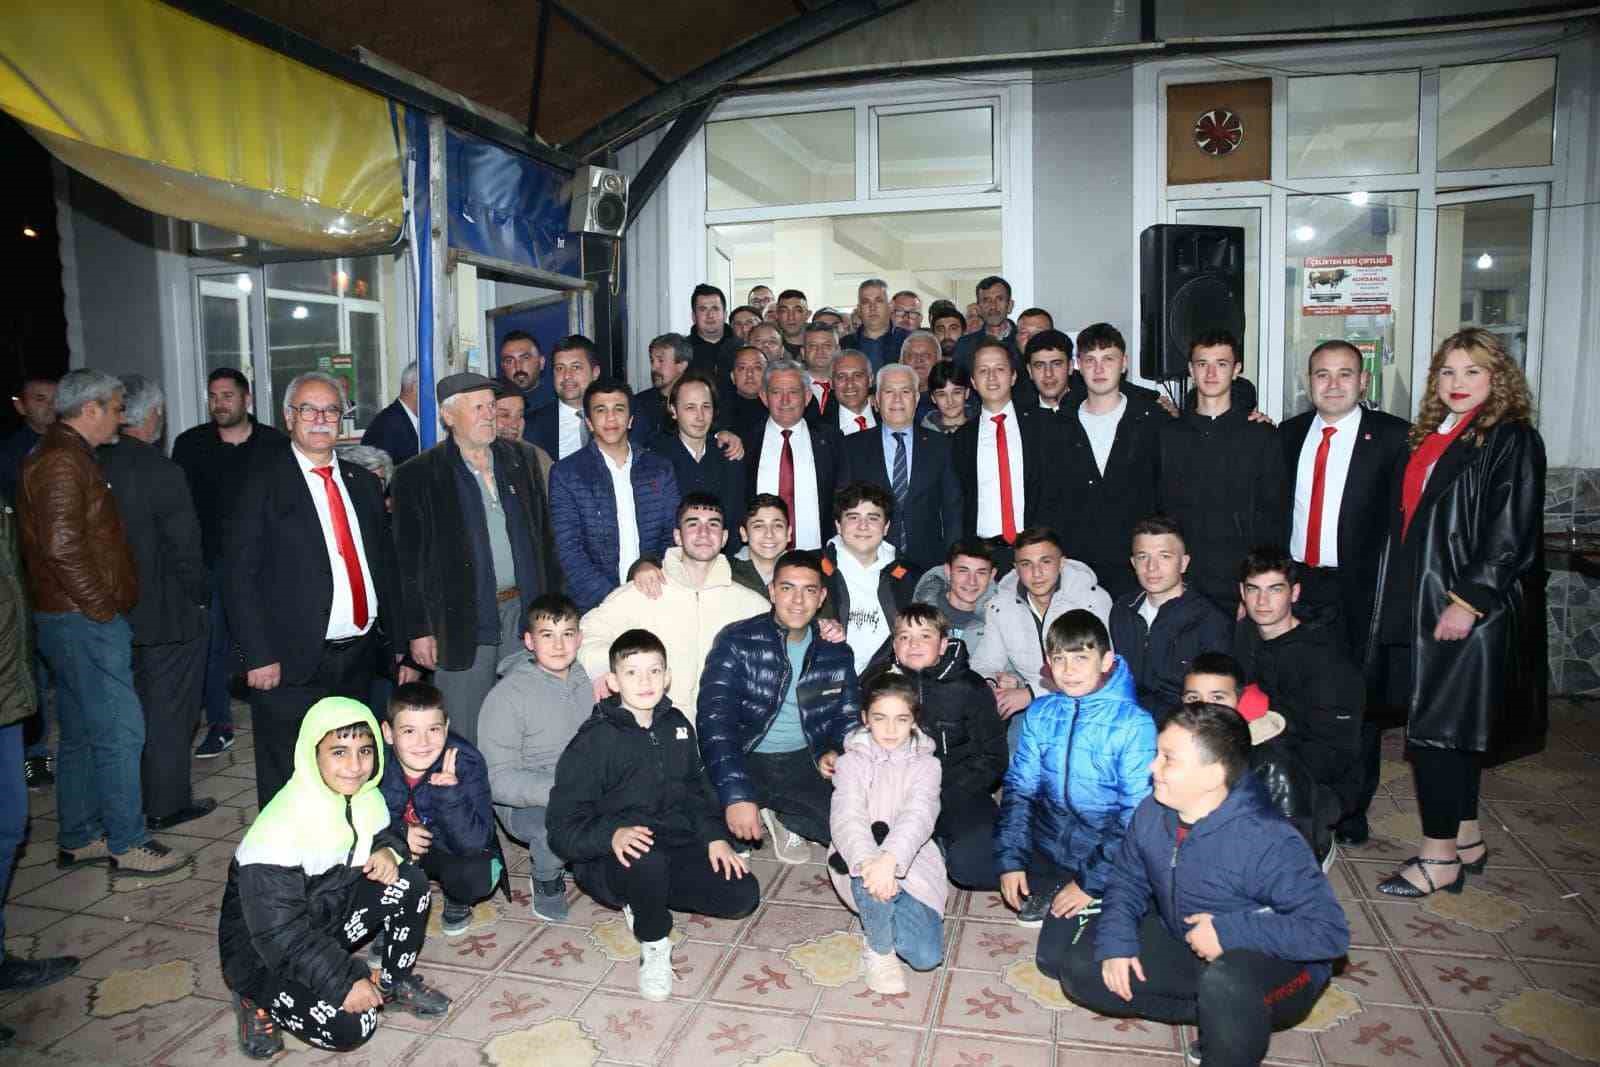 Bursa Büyükşehir Belediye Başkan Adayı Bozbey: “Bursa’da öndeyiz”